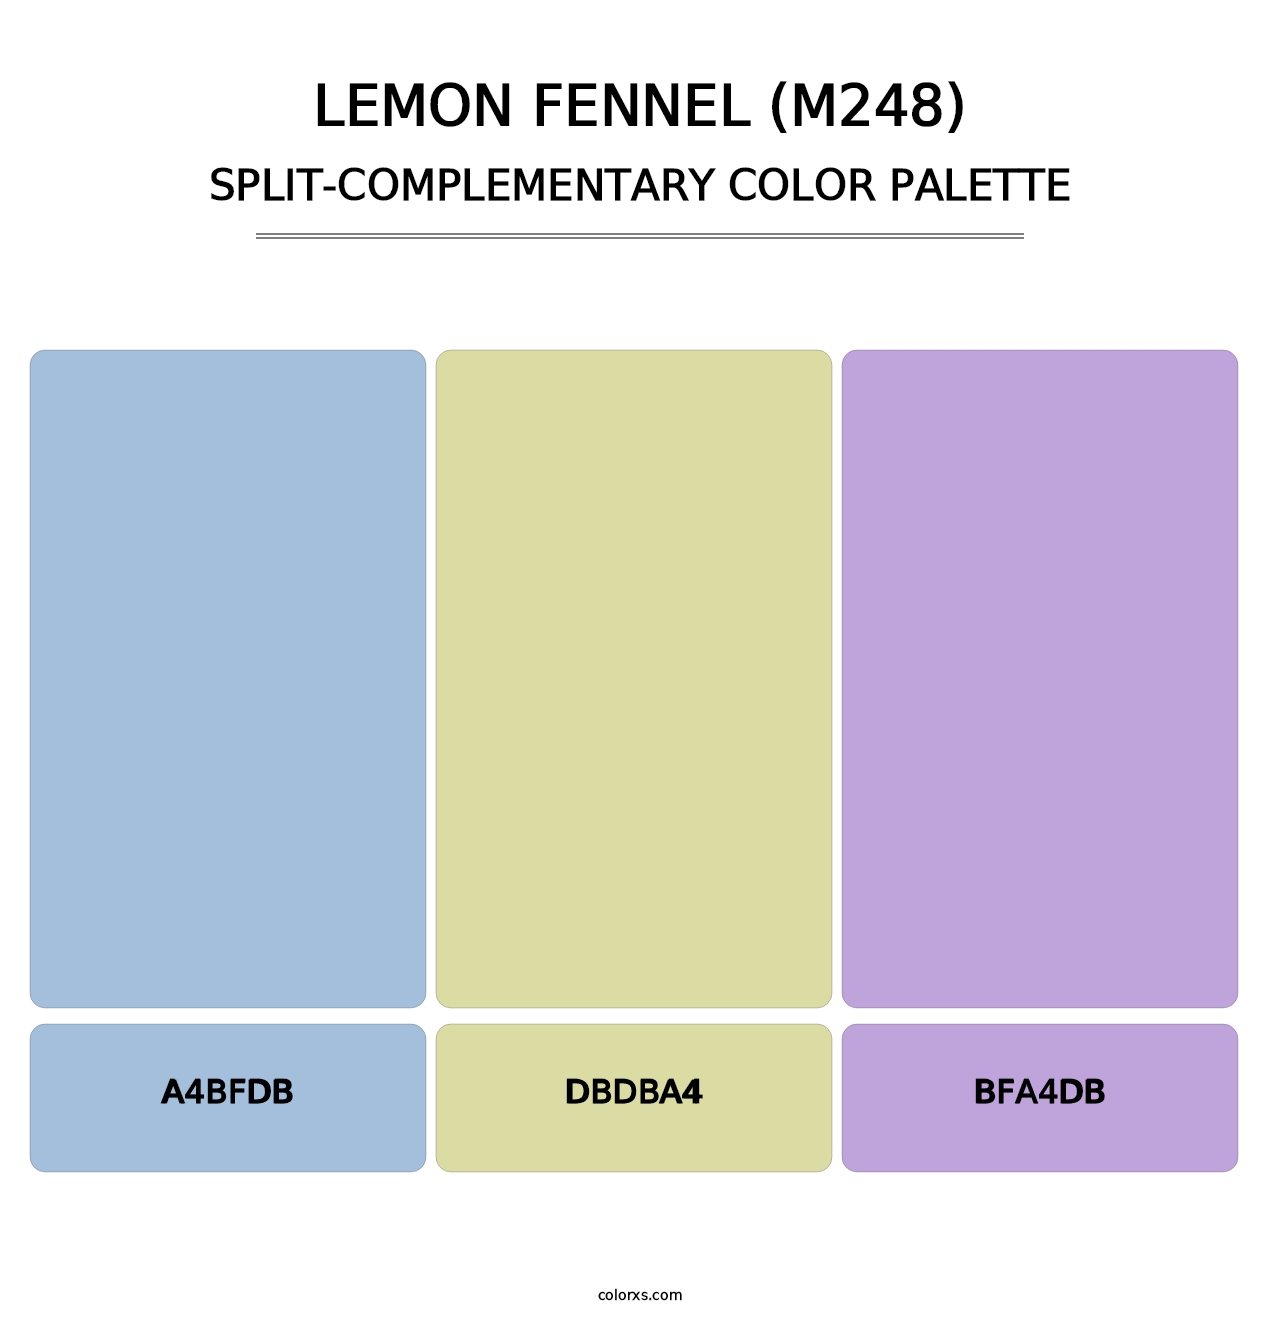 Lemon Fennel (M248) - Split-Complementary Color Palette